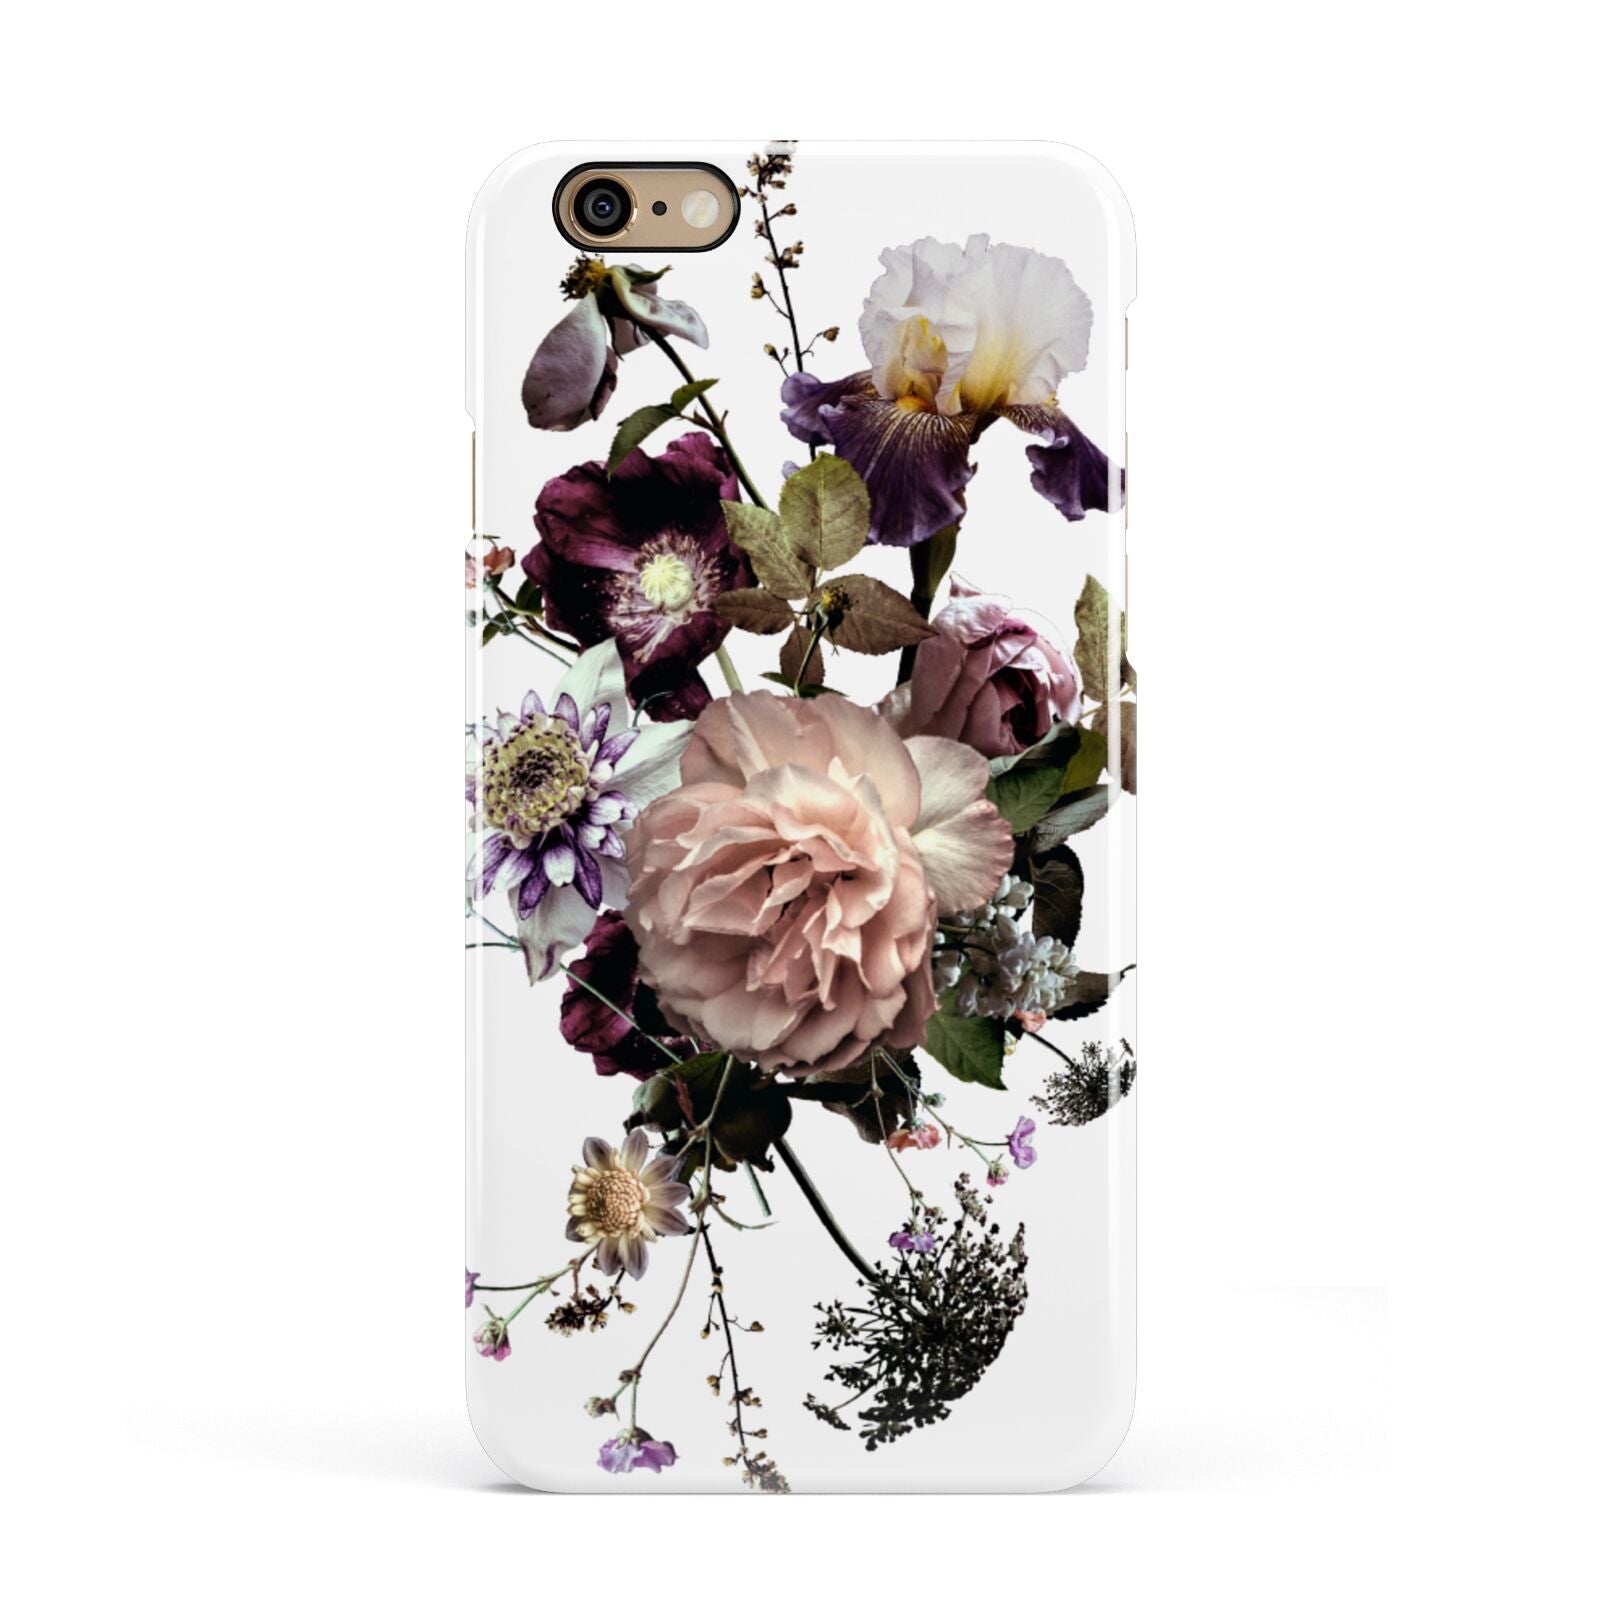 Vintage Flowers Apple iPhone 6 3D Snap Case